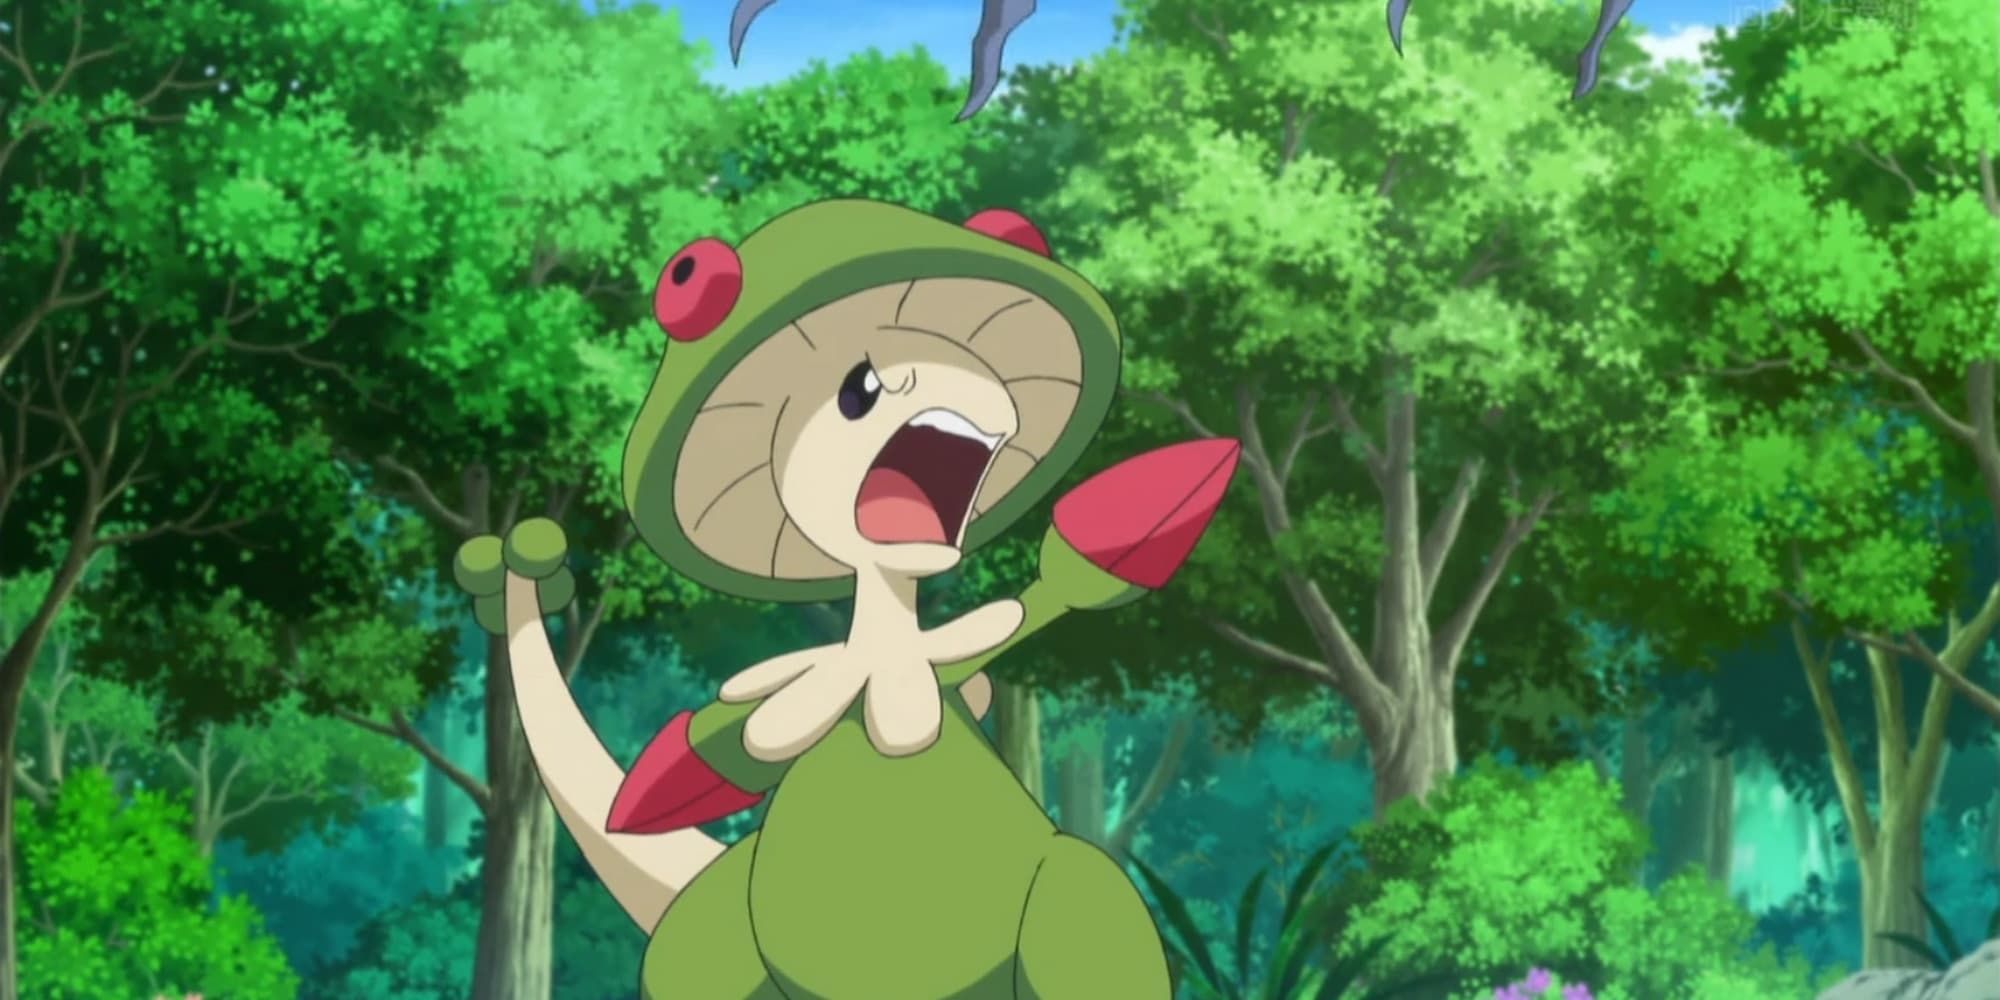 Breloom yells as it points at an opposing Pokemon in battle.